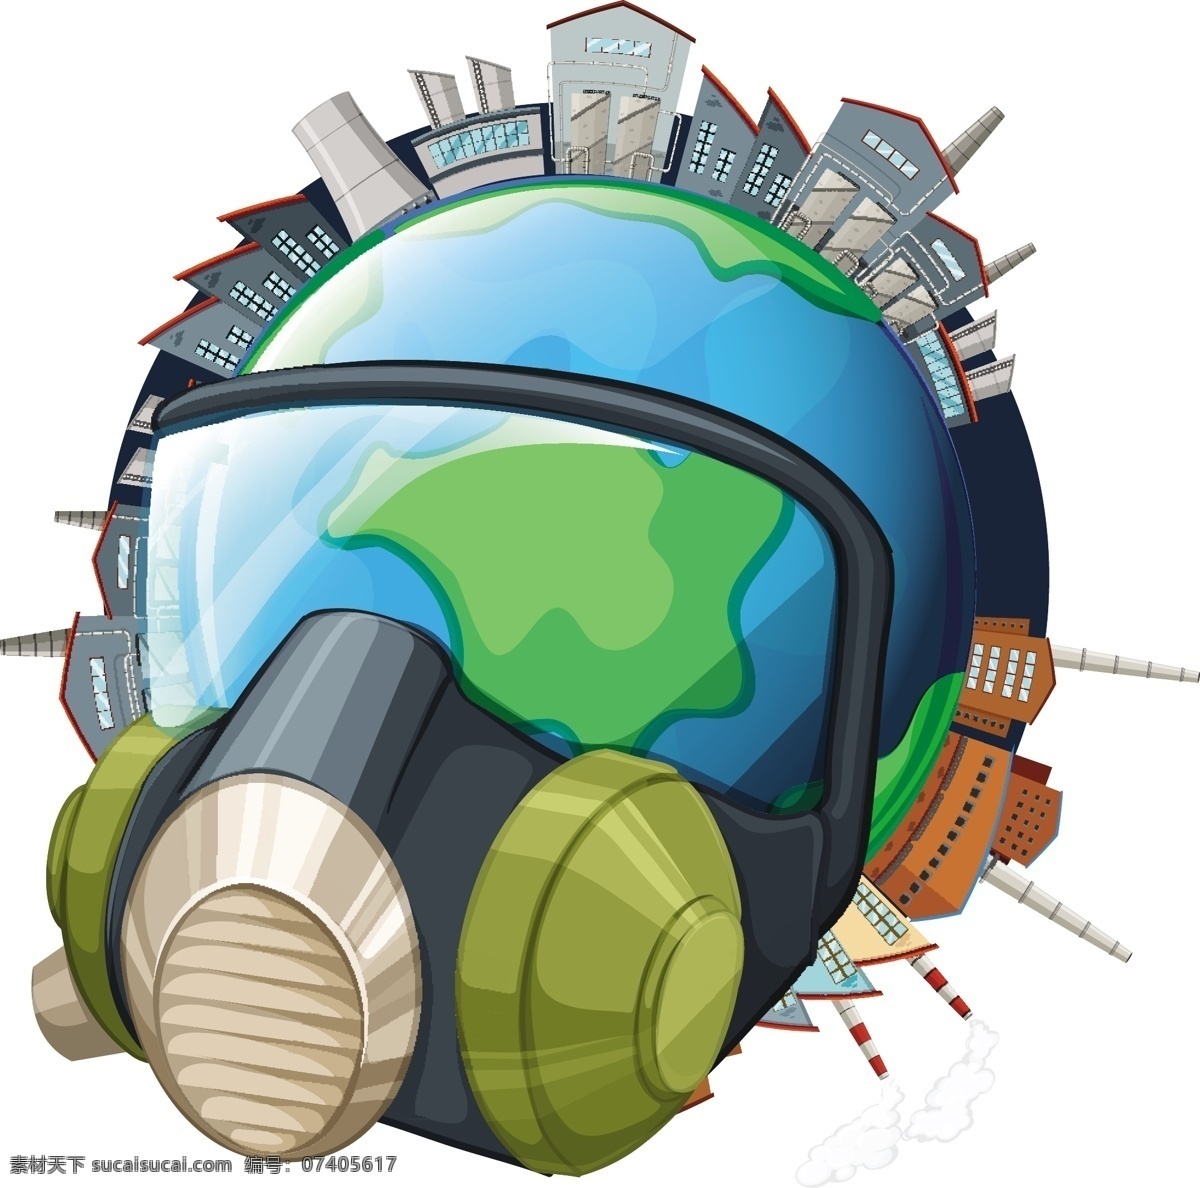 卡通地球 地球 卡通 地球日 爱护地球 环保 环境 保护大自然 生态 卡通设计